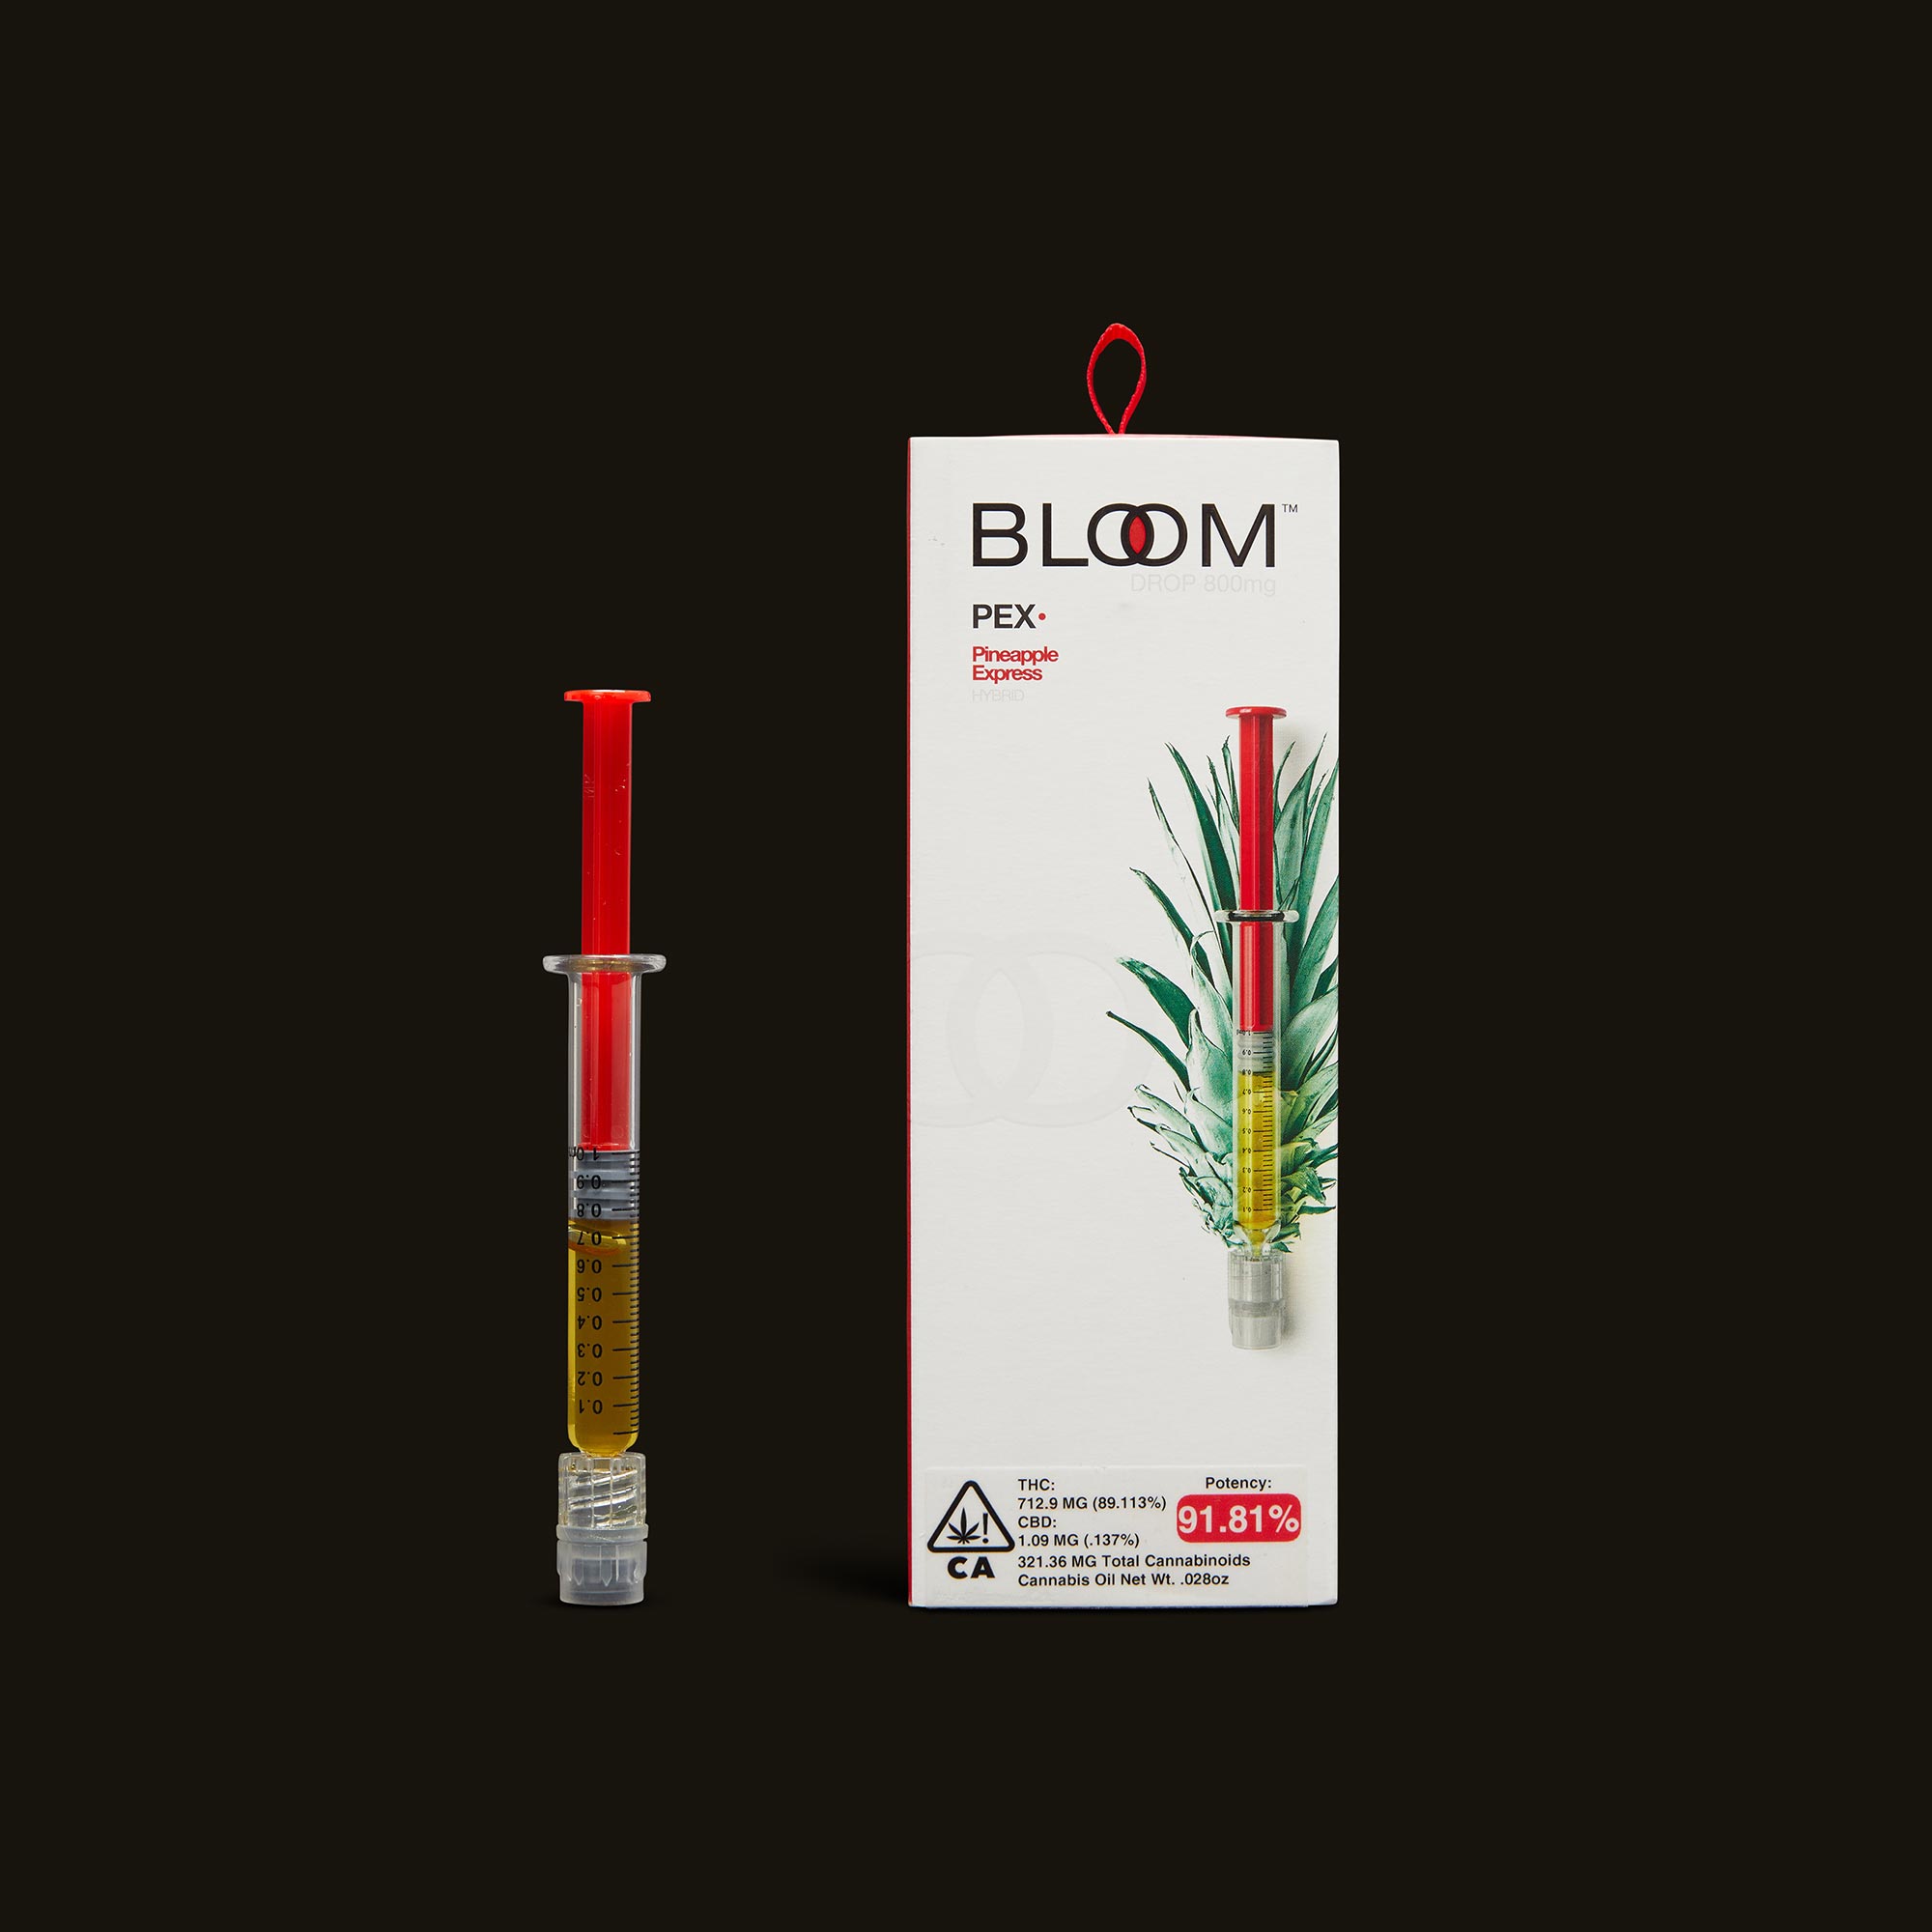 Bloom-Pineapple-Express-Drop3469-1-2264155.jpg